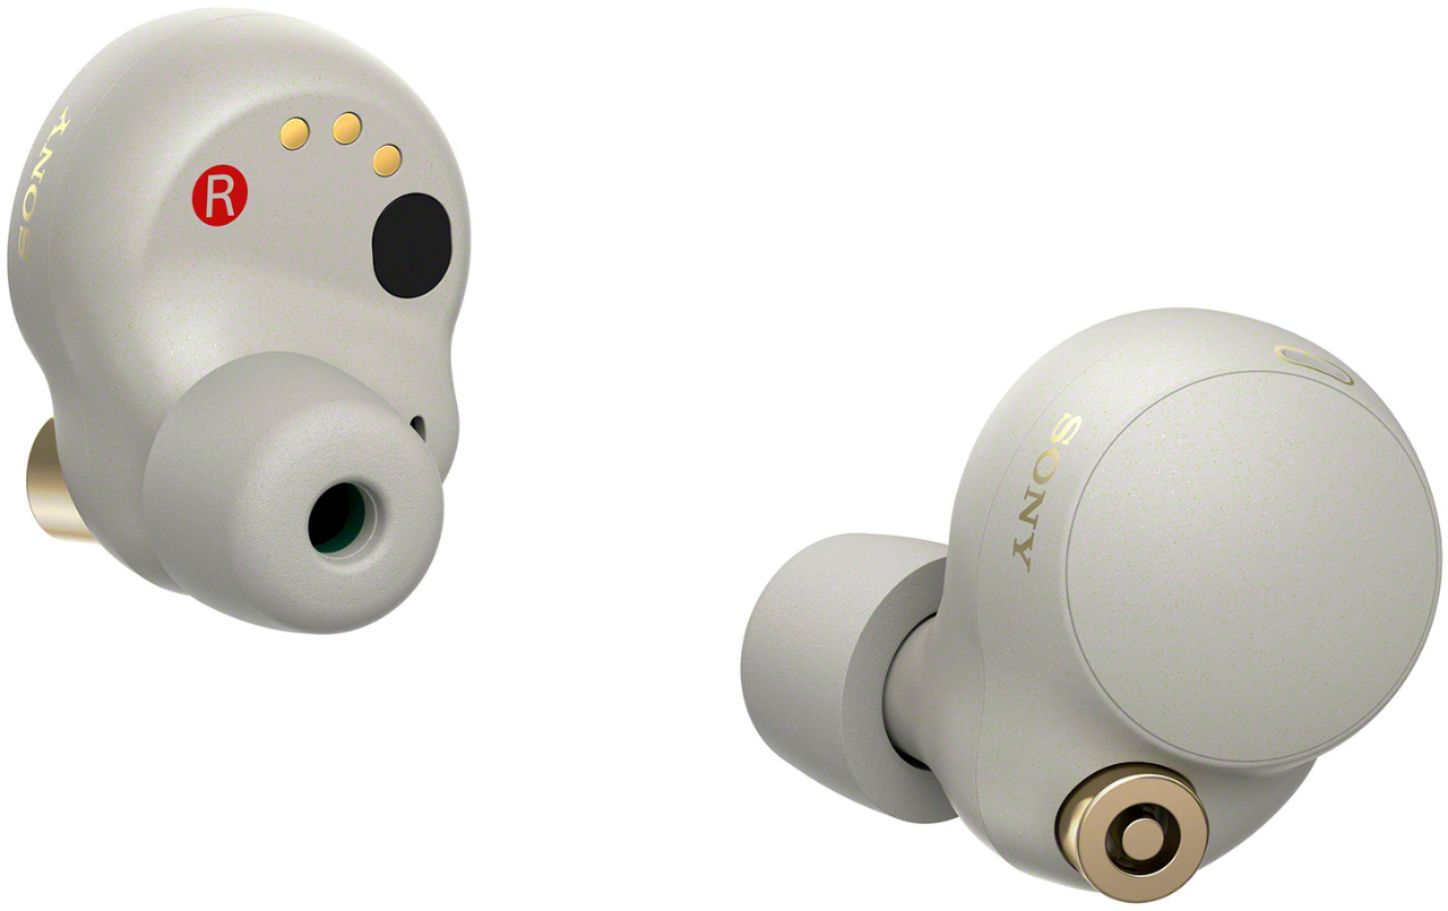 Sony WF-1000XM4 True Wireless Noise Cancelling In-Ear Headphones 